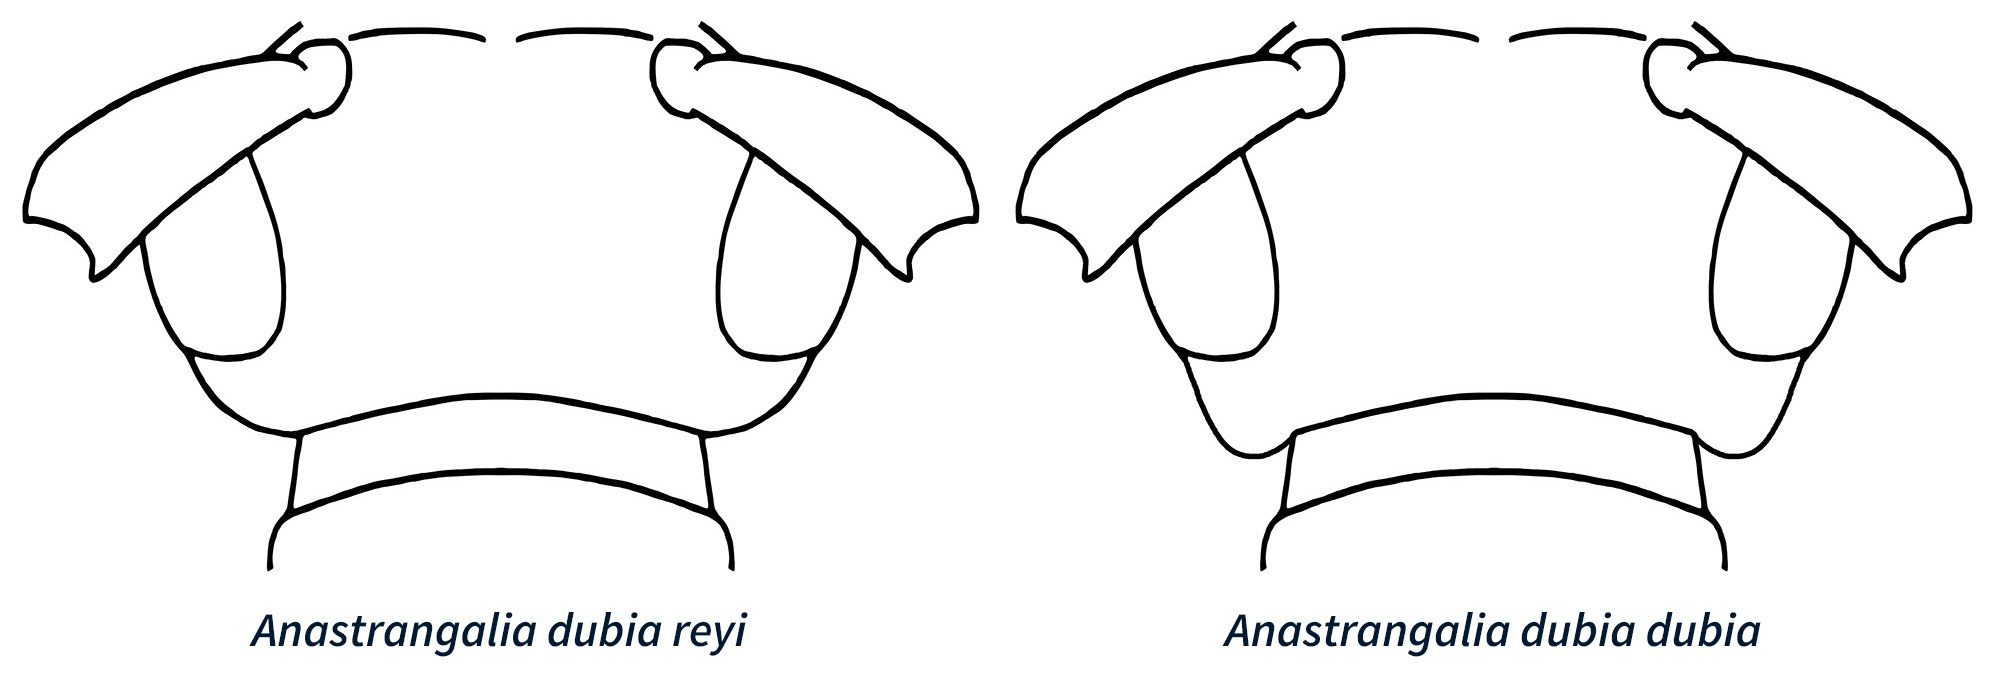 Anastrangalia dubia reyi